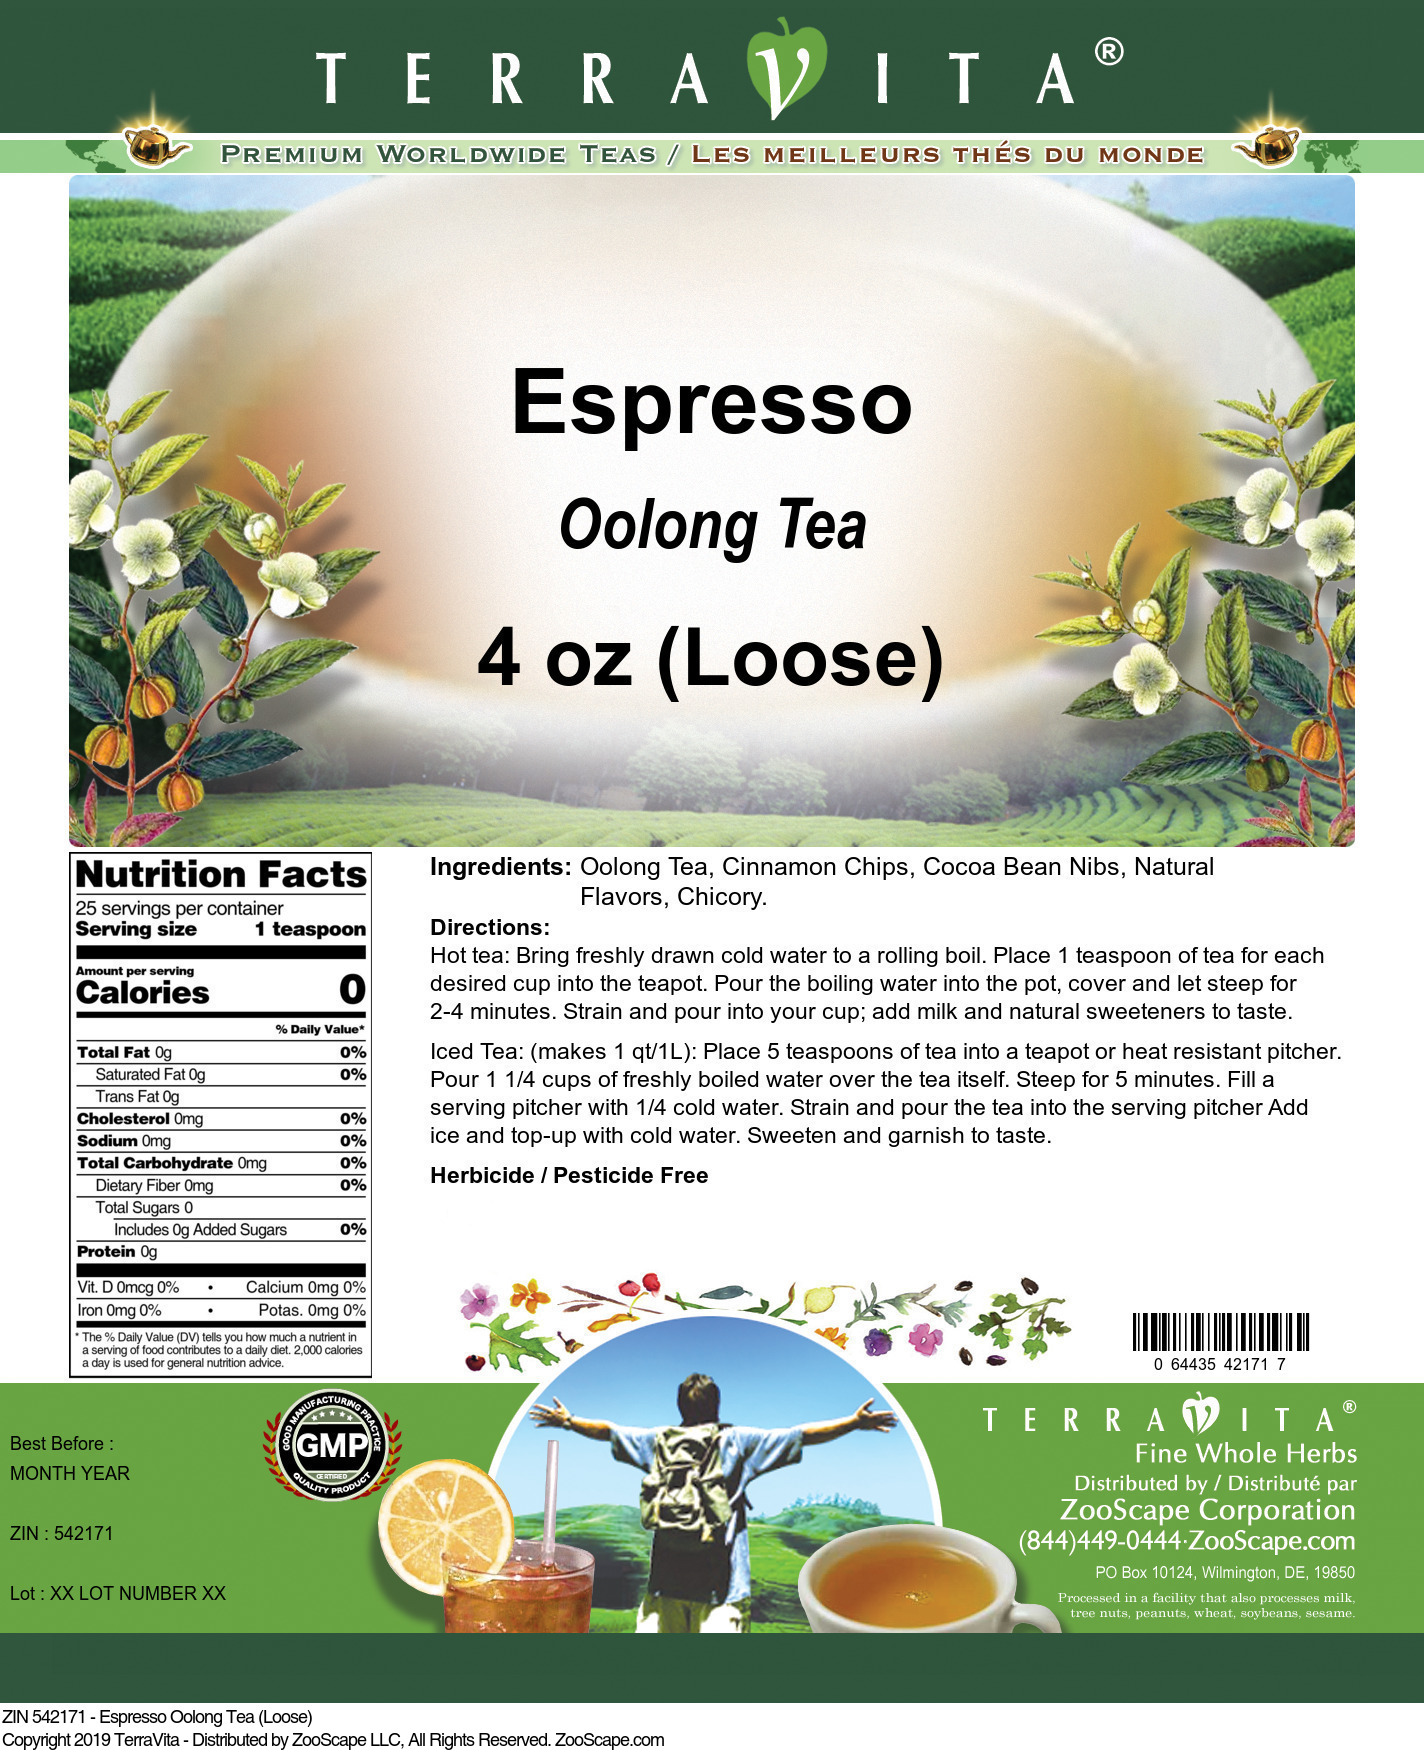 Espresso Oolong Tea (Loose) - Label